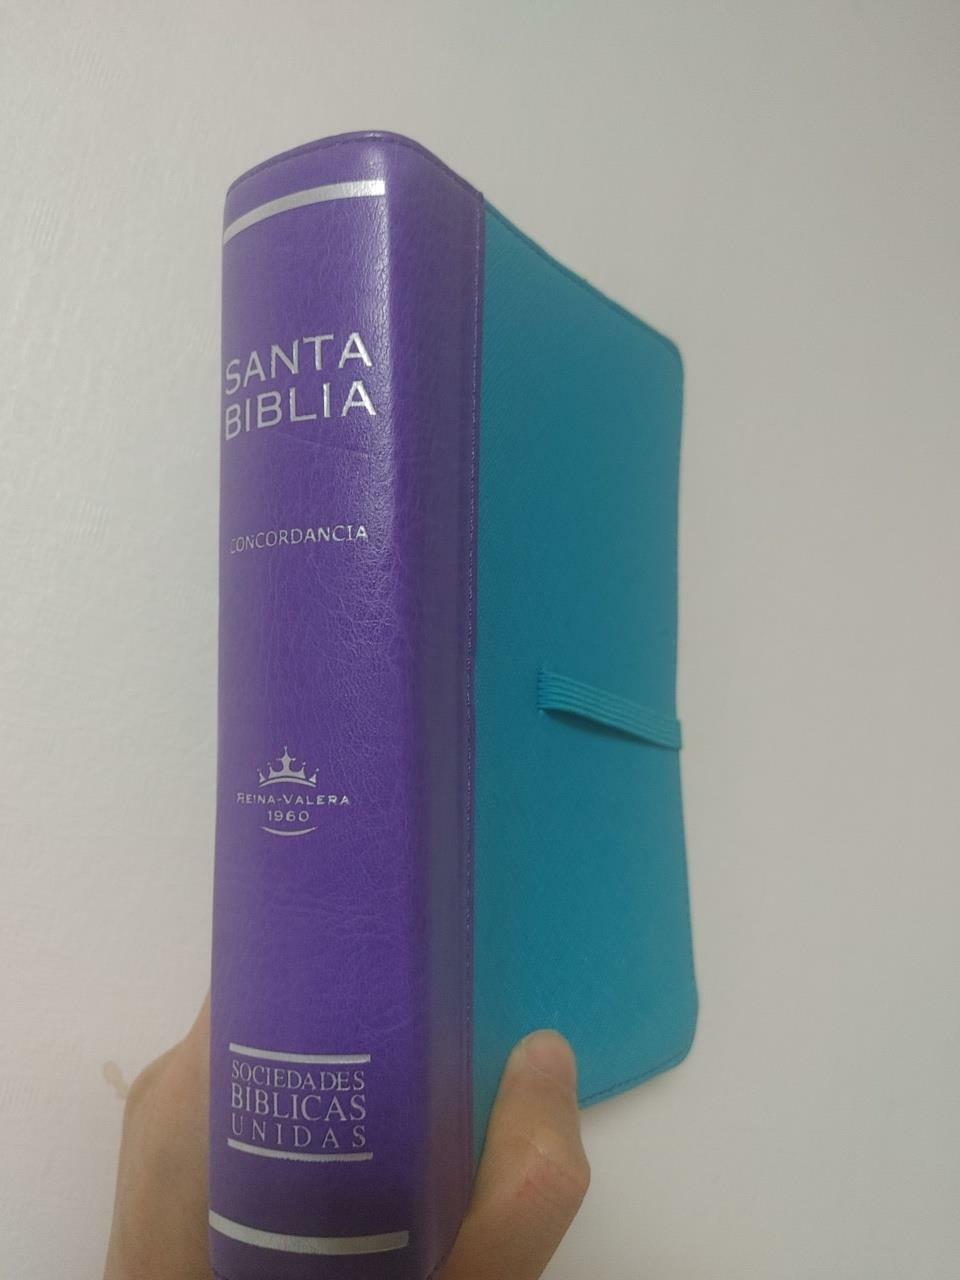 [중고] santa biblia concordncia reina valera 1960, Sociedades Biblicas Unidas (소프트 커버)